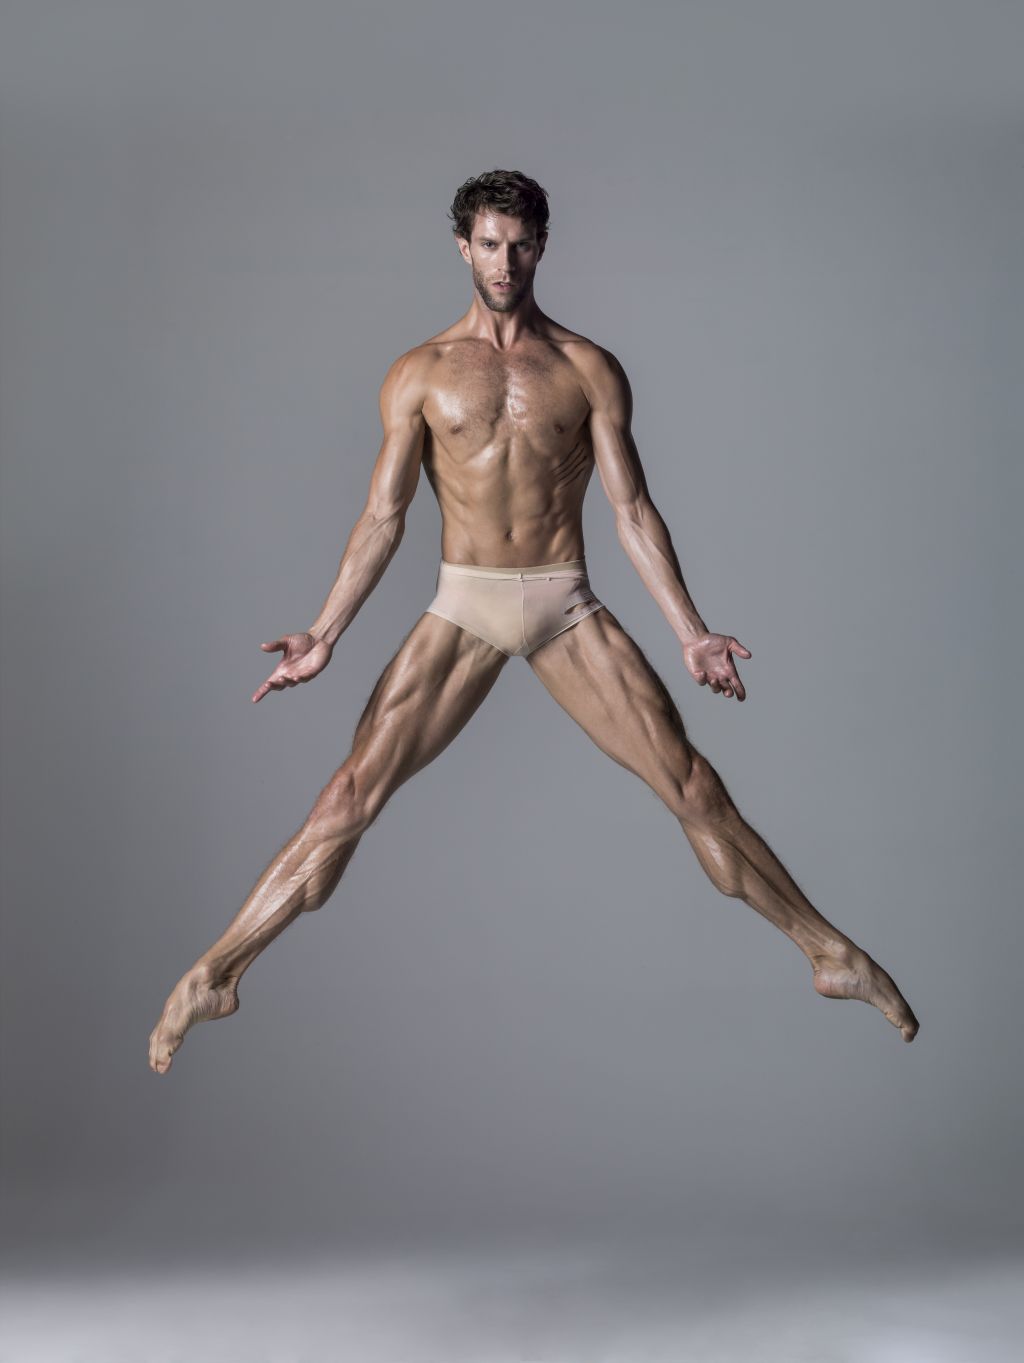 James_Whiteside_Ballet_Studio_9-13-15